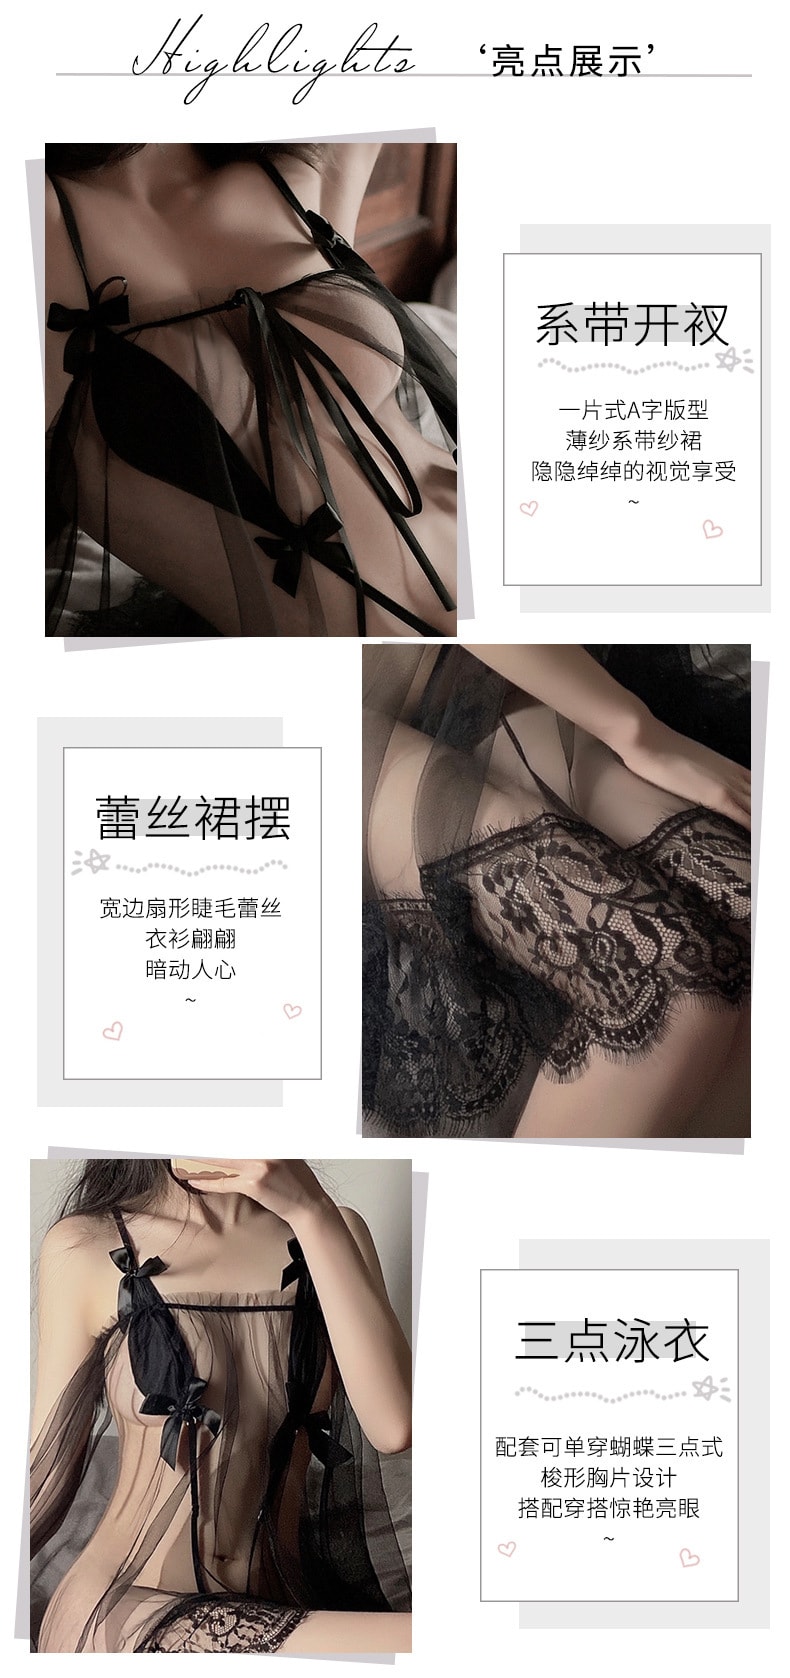 中國 曼煙 性感透視網紗蕾絲吊帶繫帶開衩睡裙 黑色均碼